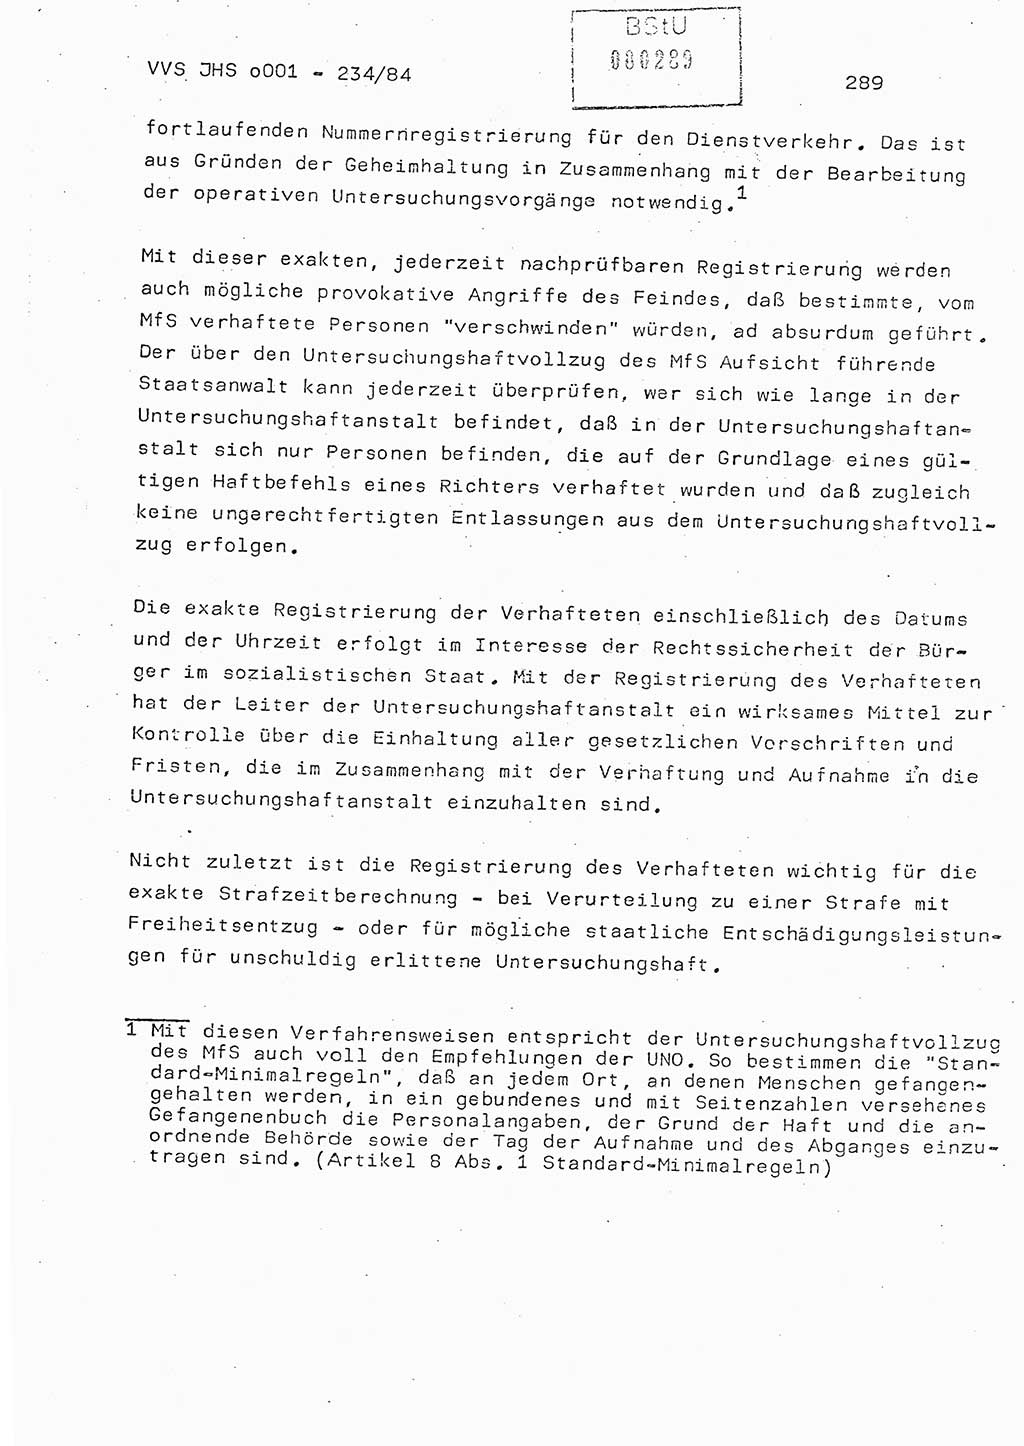 Dissertation Oberst Siegfried Rataizick (Abt. ⅩⅣ), Oberstleutnant Volkmar Heinz (Abt. ⅩⅣ), Oberstleutnant Werner Stein (HA Ⅸ), Hauptmann Heinz Conrad (JHS), Ministerium für Staatssicherheit (MfS) [Deutsche Demokratische Republik (DDR)], Juristische Hochschule (JHS), Vertrauliche Verschlußsache (VVS) o001-234/84, Potsdam 1984, Seite 289 (Diss. MfS DDR JHS VVS o001-234/84 1984, S. 289)